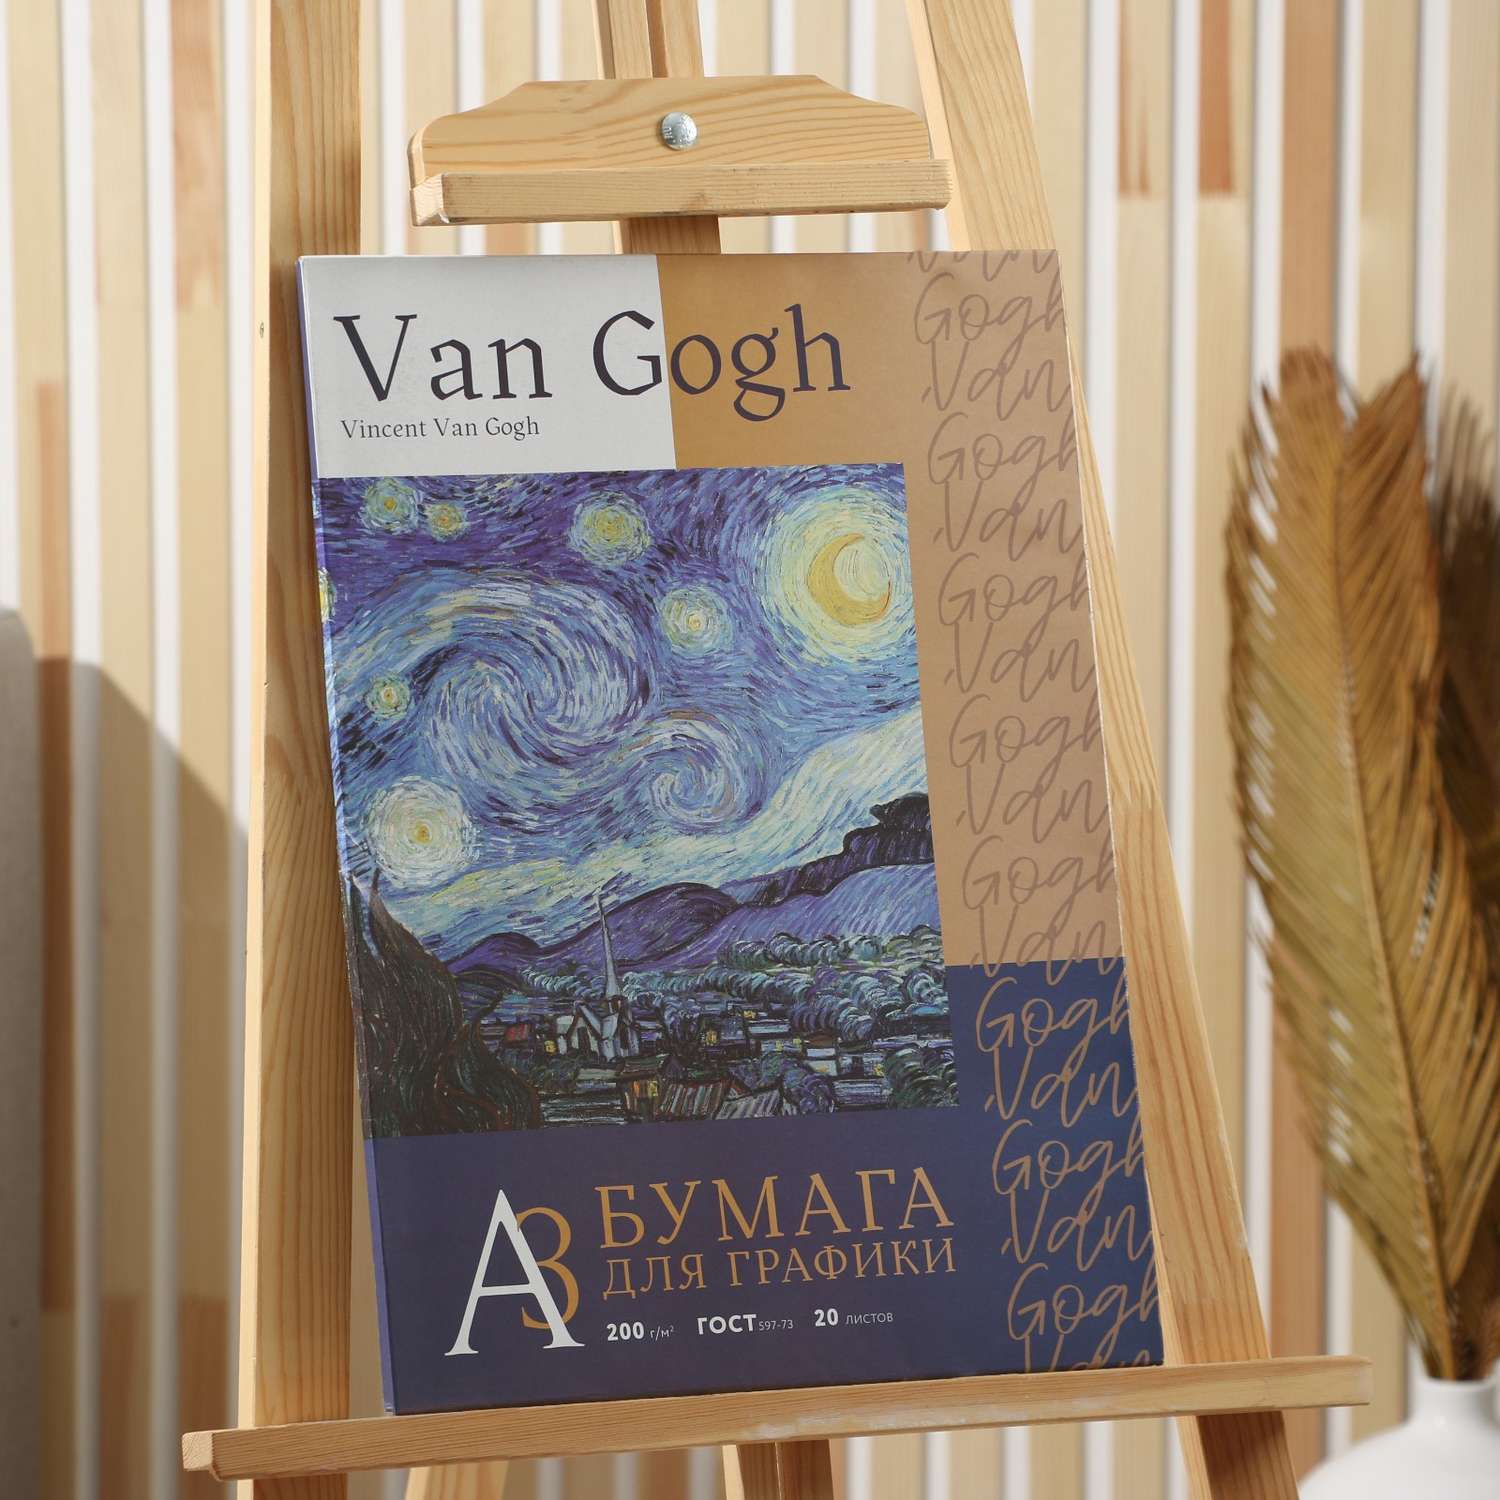 Бумага ARTLAVKA для графических работ А3 20 листов 200 г/м2 Van Gogh - фото 2